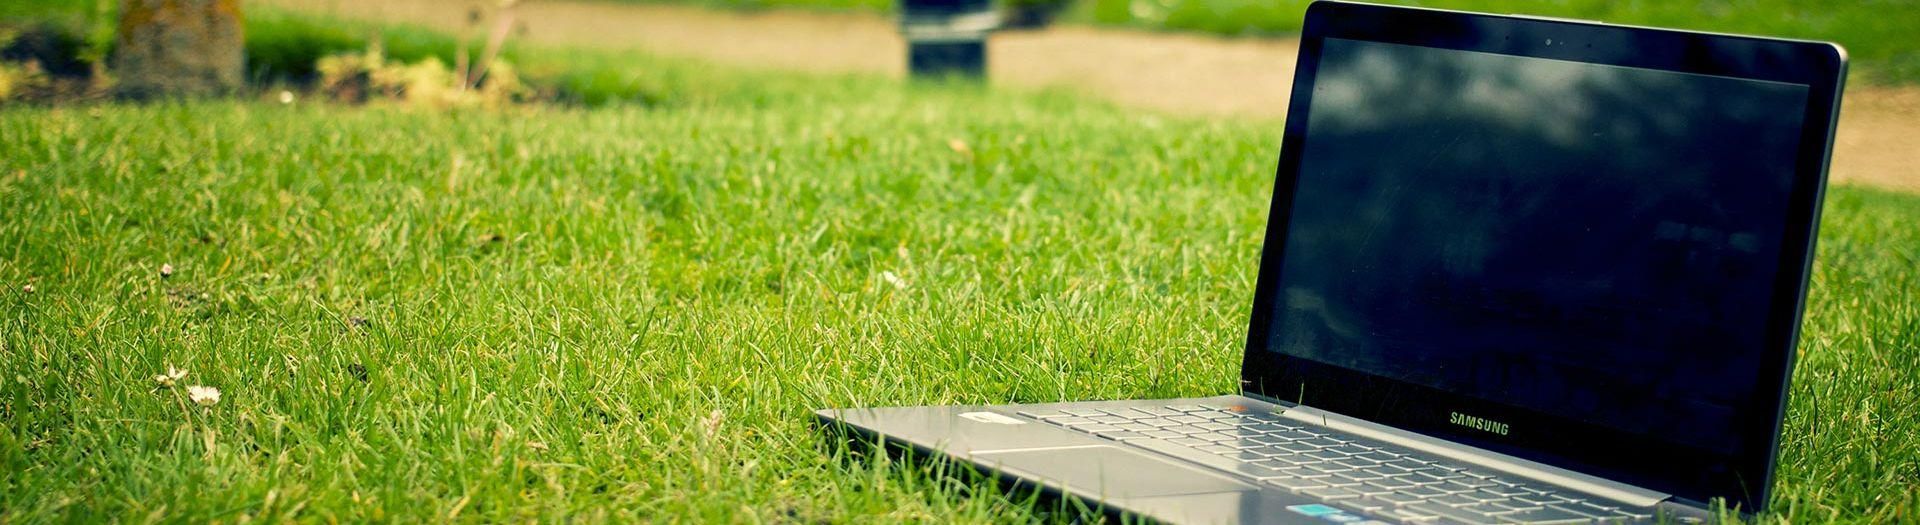 laptop-notebook-grass-meadow-9b558d75 BKI | BRIGHT Software B.V.